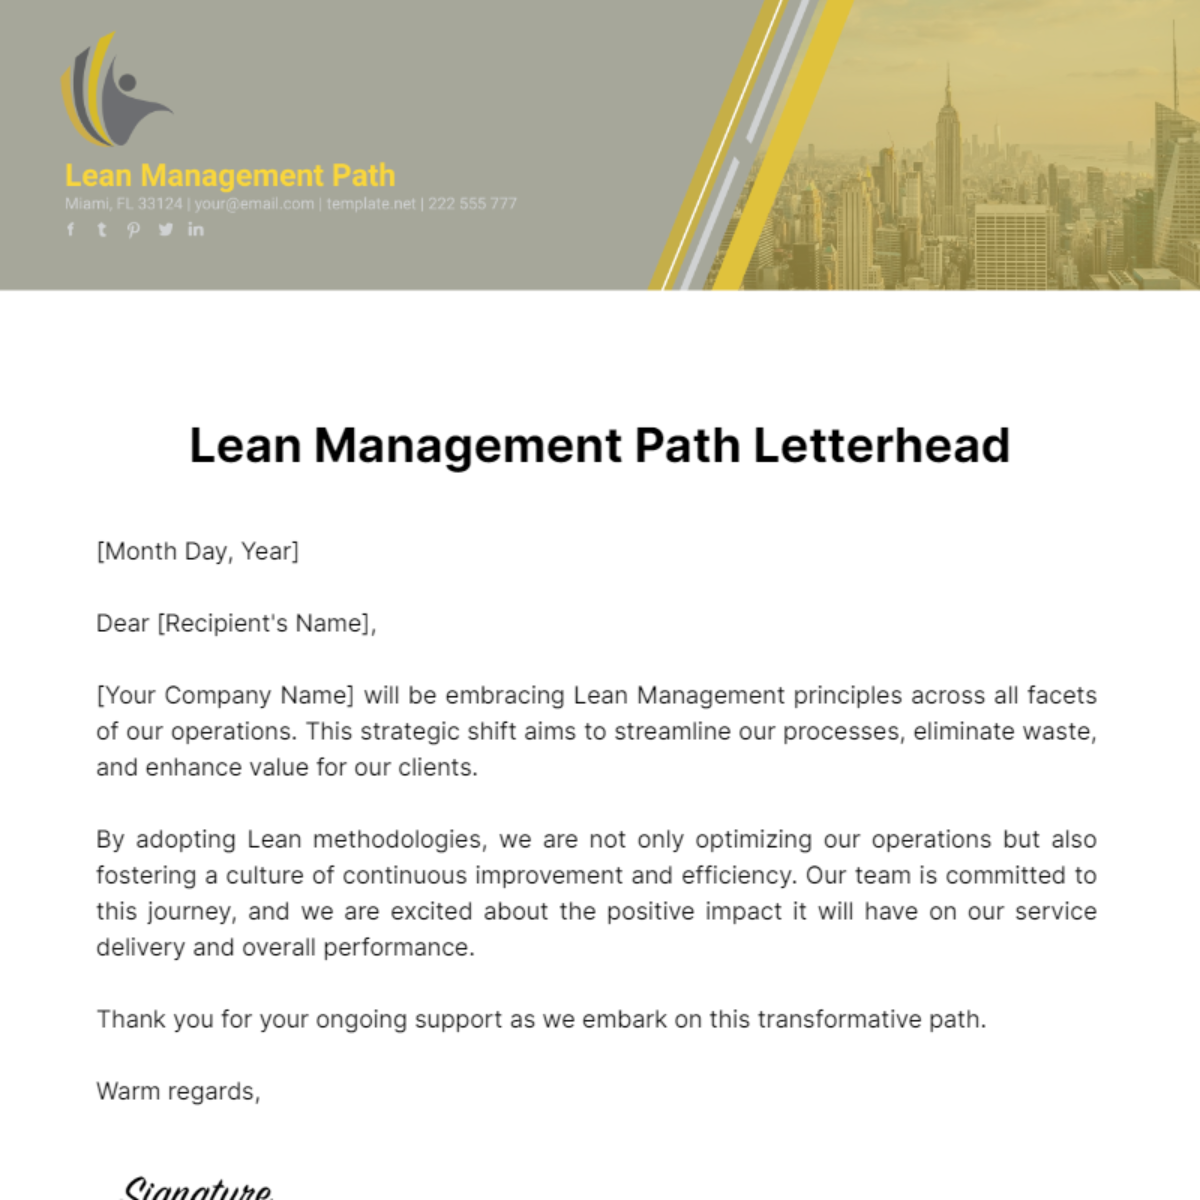 Lean Management Path Letterhead Template